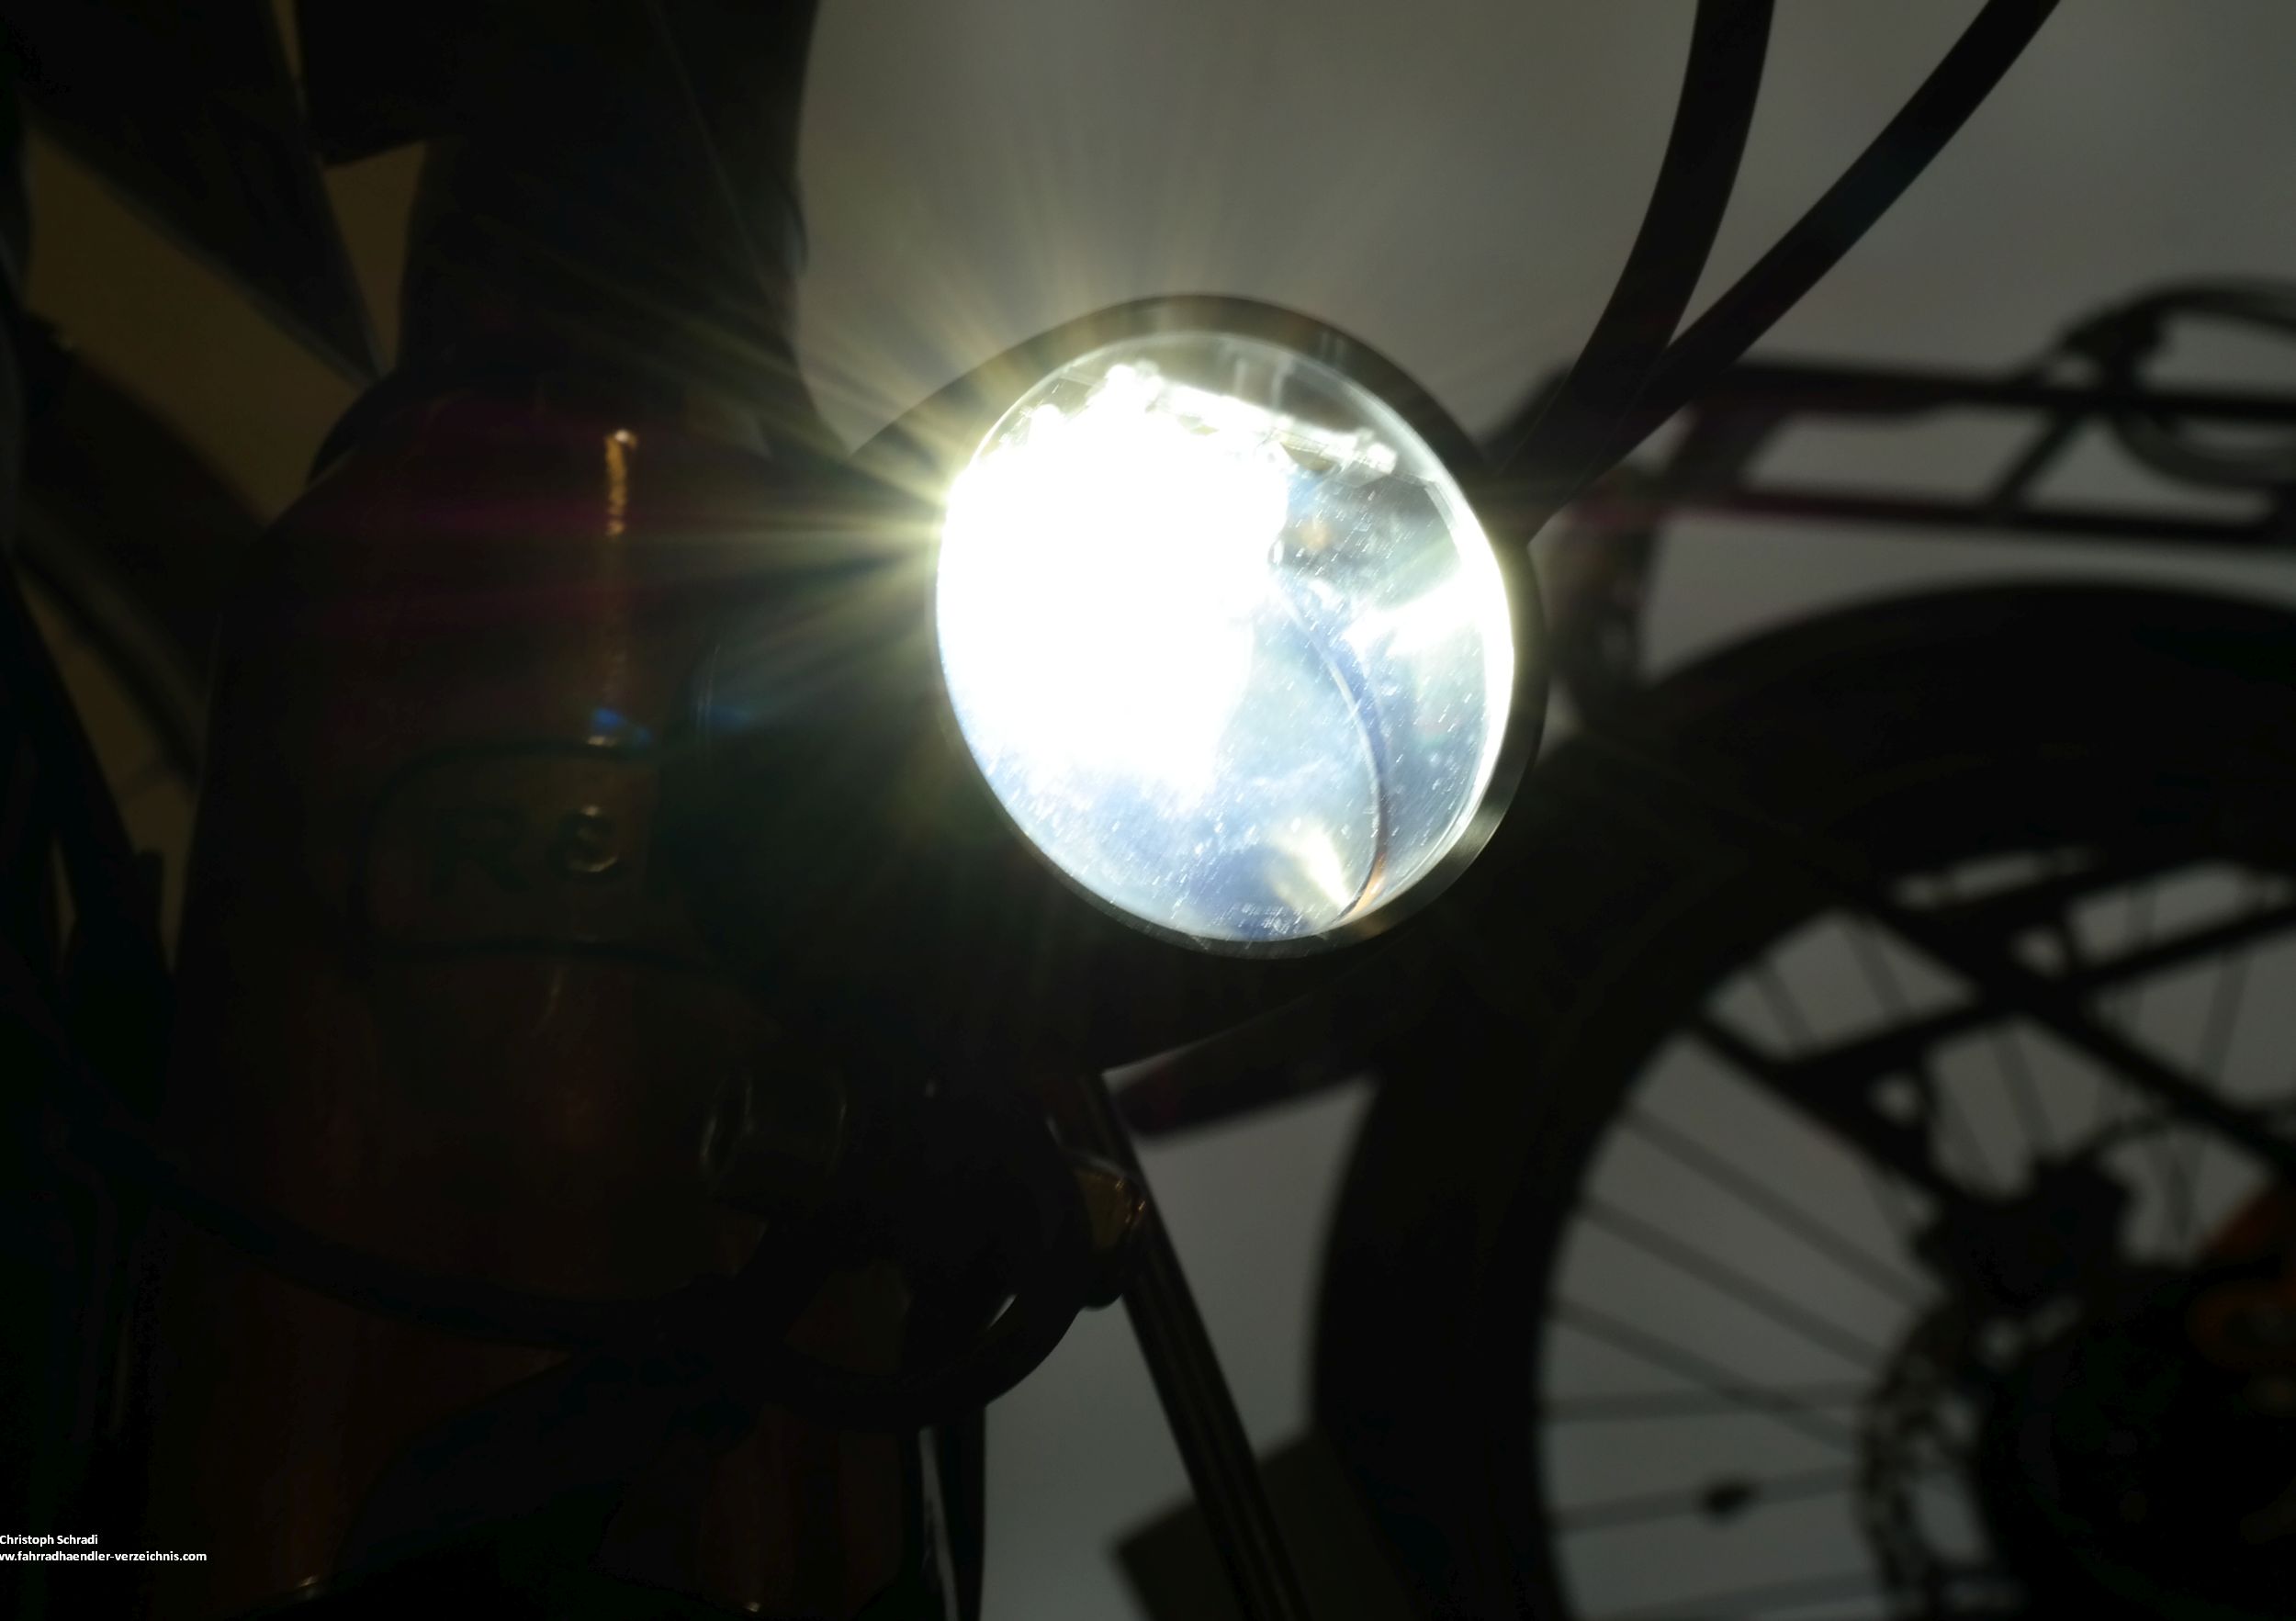 E-Bike Hersteller sind seit 2017 verpflichtet noch mindestens eineinhalb Stunden nach Unterstützungsende für Licht am E-Bike zu sorgen, davor war dies freiwillig